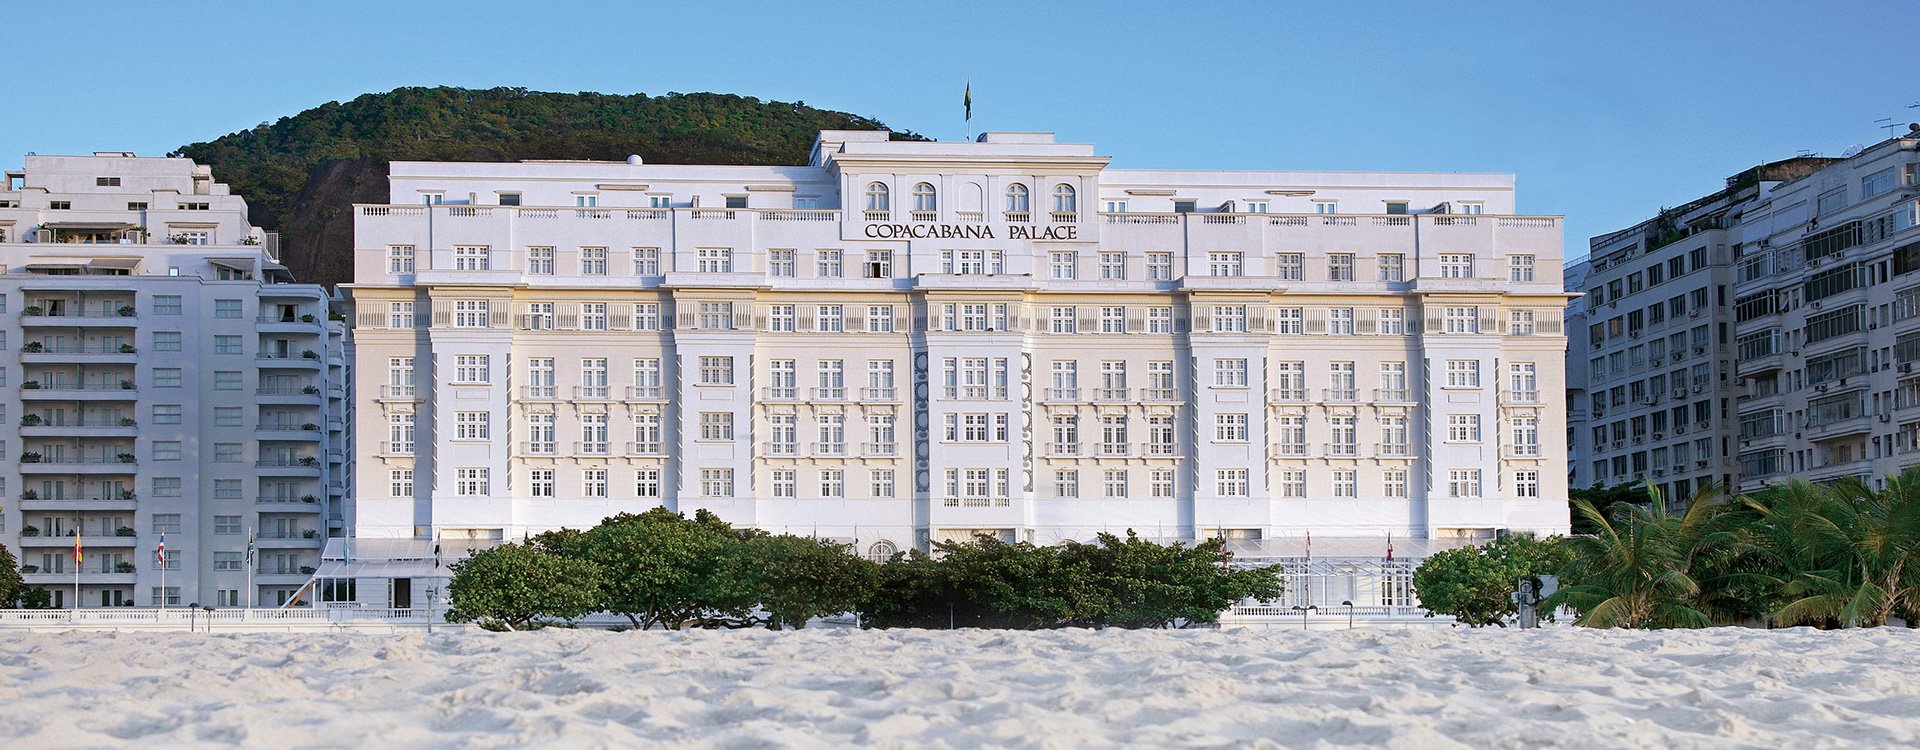 Belmond Copacabana Palace_Exterior